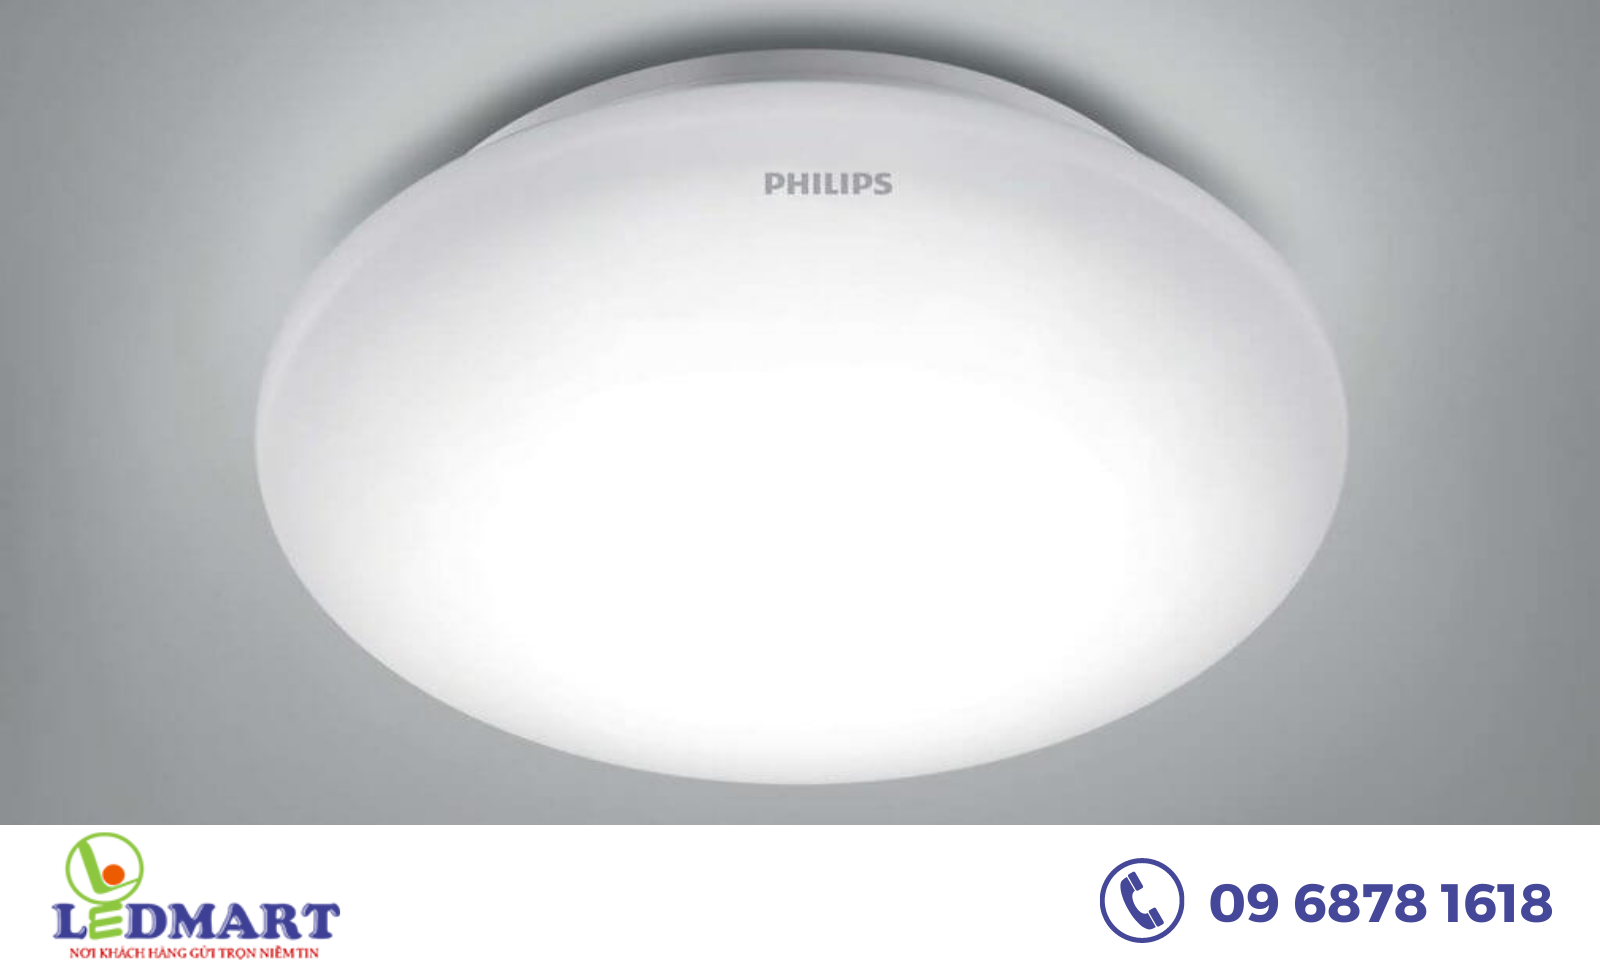 đặc điểm nổi bật của đèn ốp trần Philips